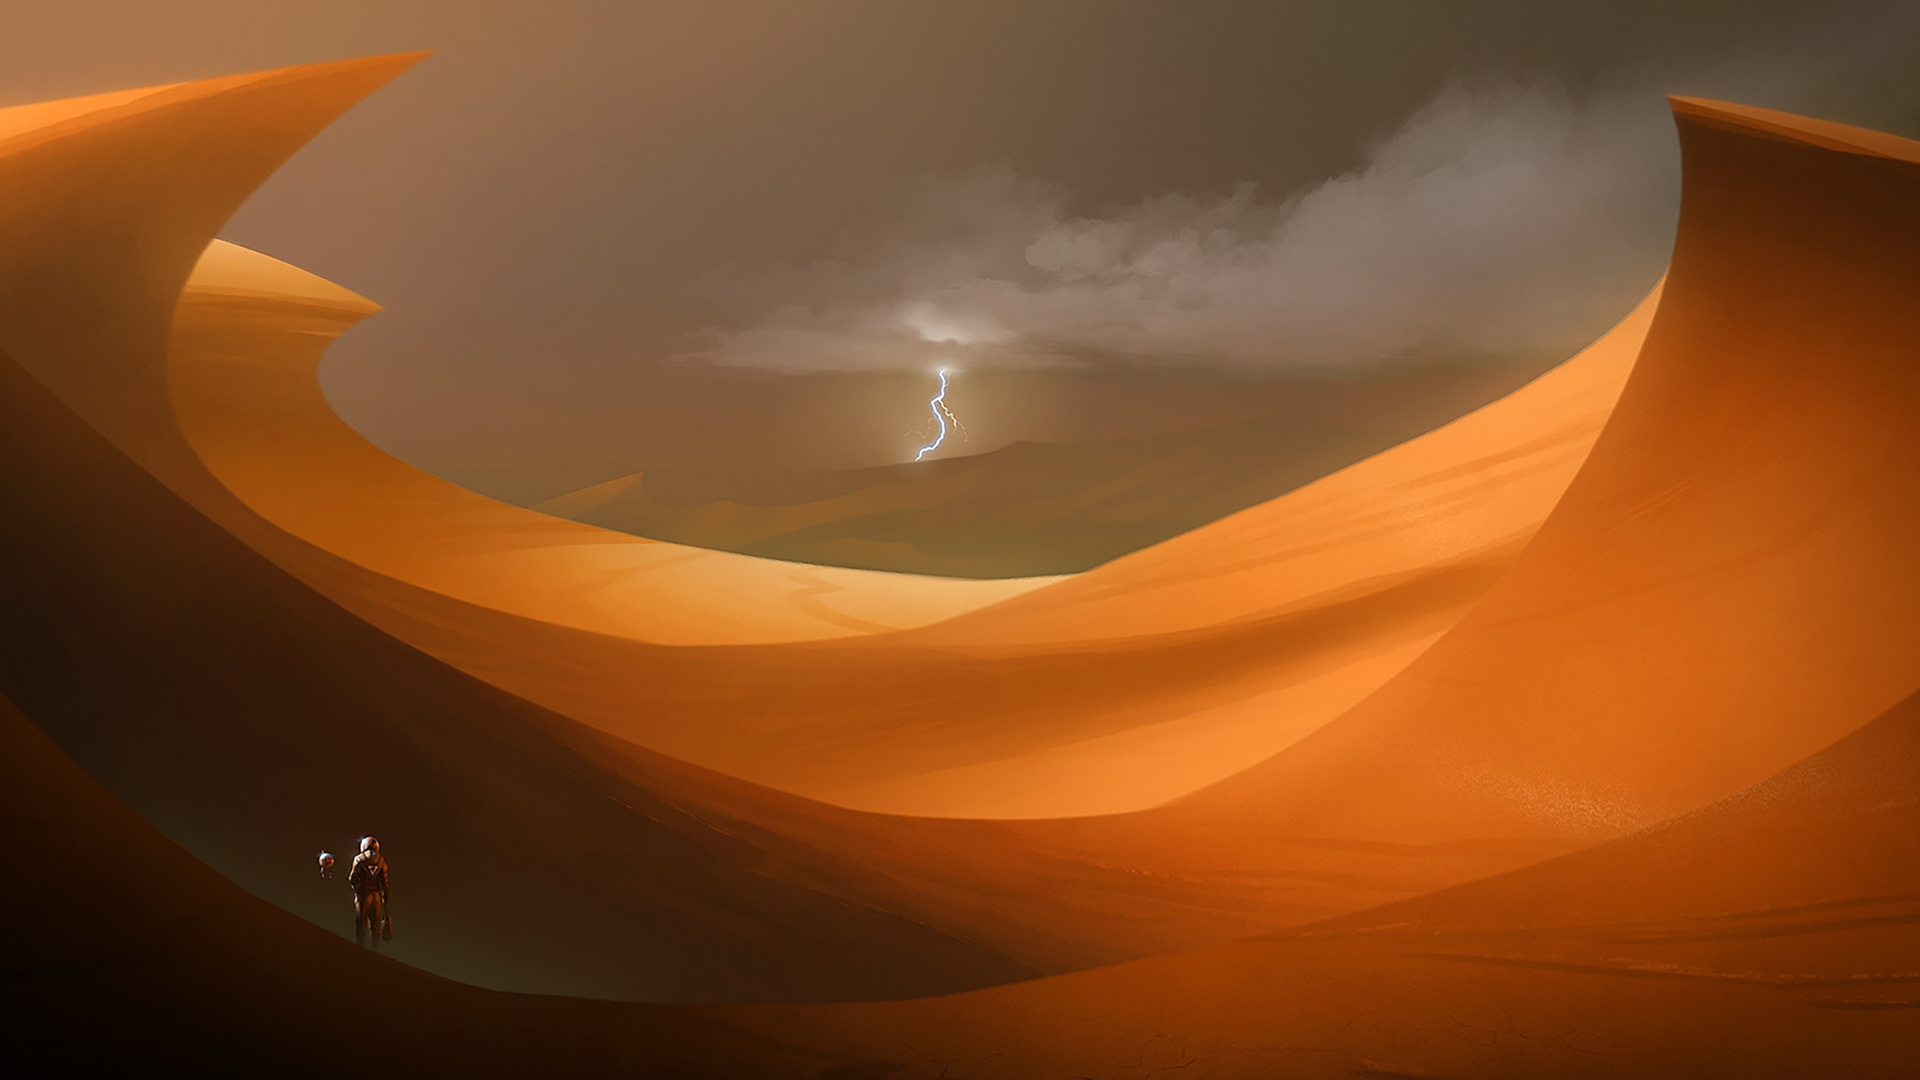 Download mobile wallpaper Lightning, Desert, Sci Fi, Dune, Astronaut for free.